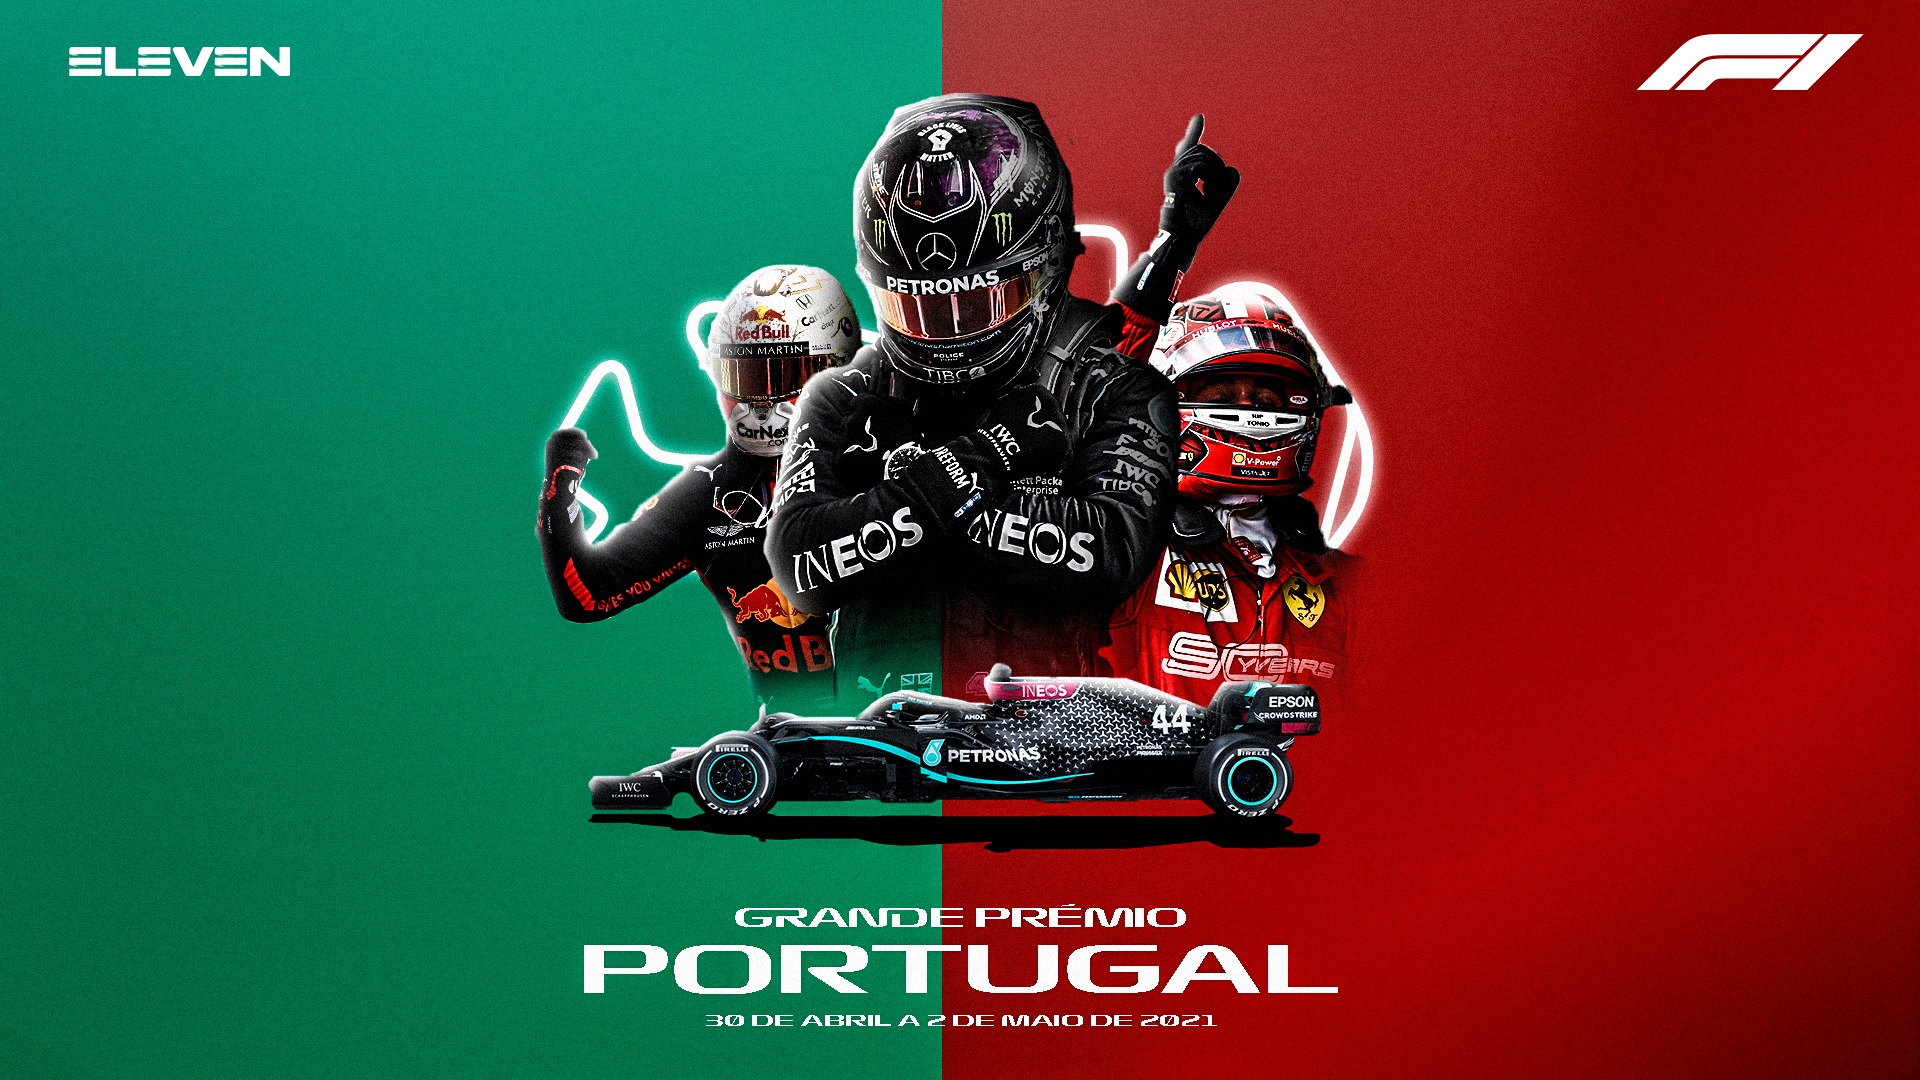 , F1 regressa oficialmente a Portugal. ELEVEN prepara nova operação sem precedentes